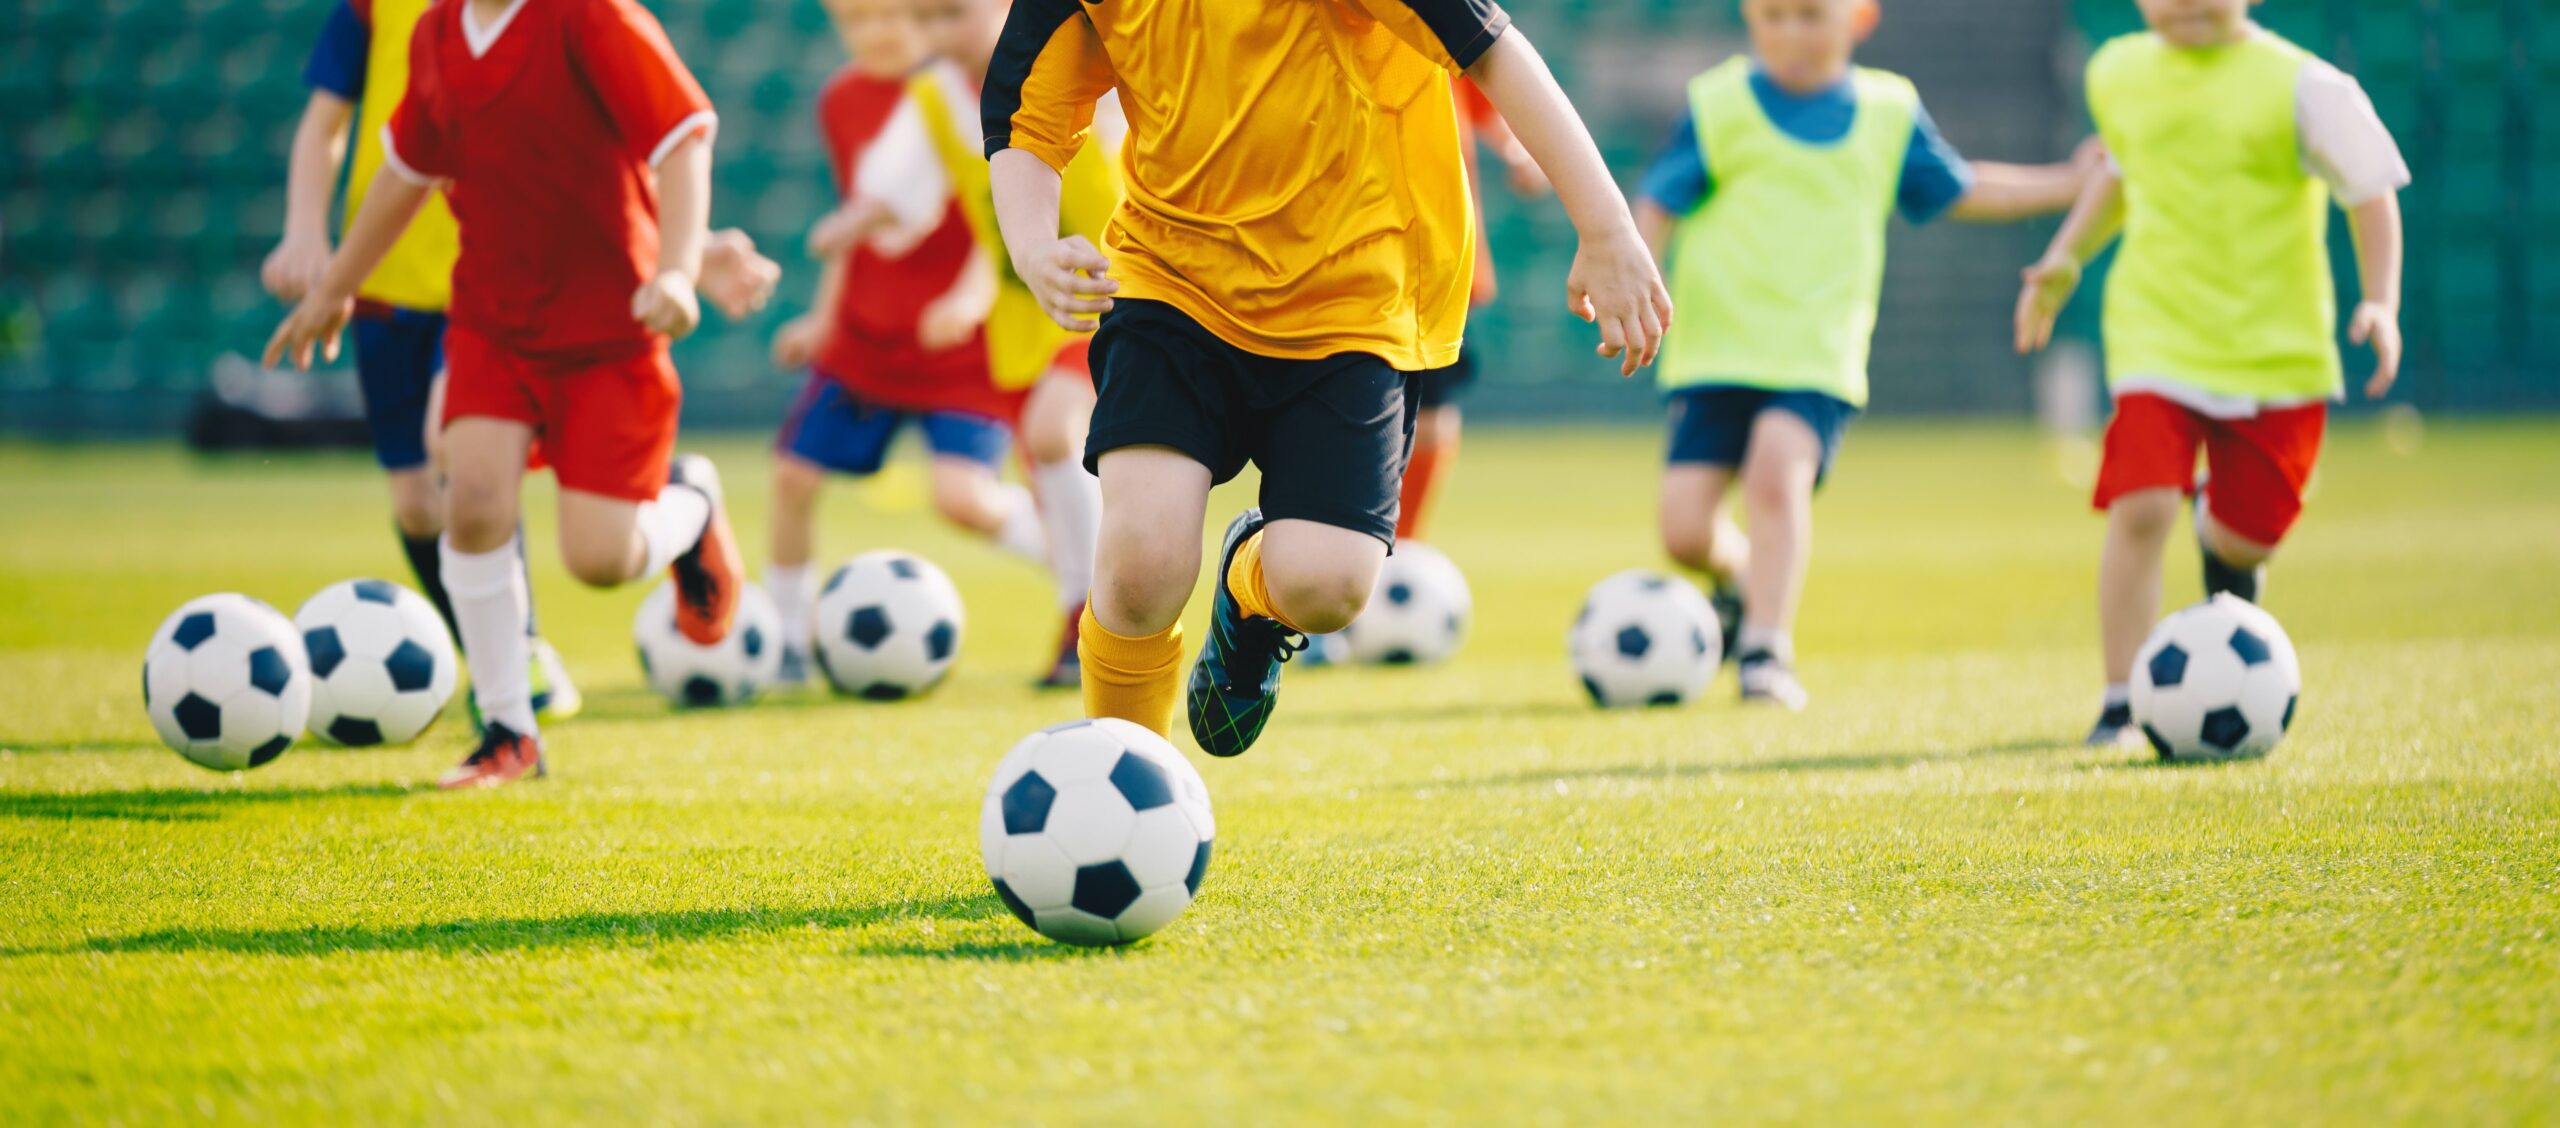 Children kicking a soccer ball